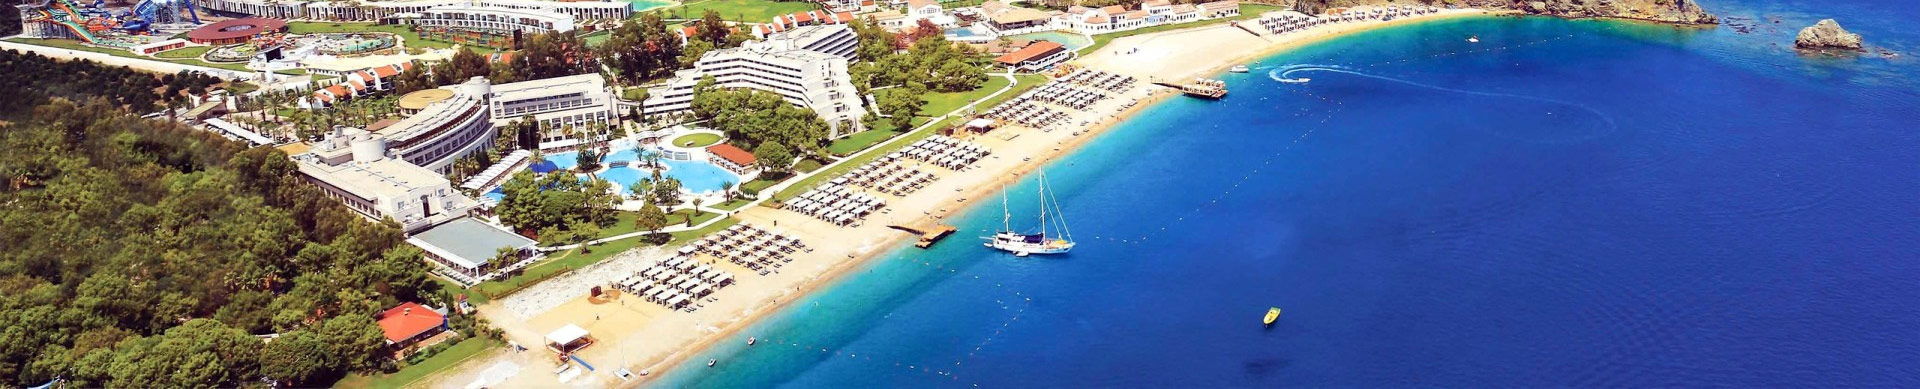 Tekirova Flughafen taxi Transfer von-zu Ferien hotel transfer Antalya Flughafen Urlaubsreise Türkei